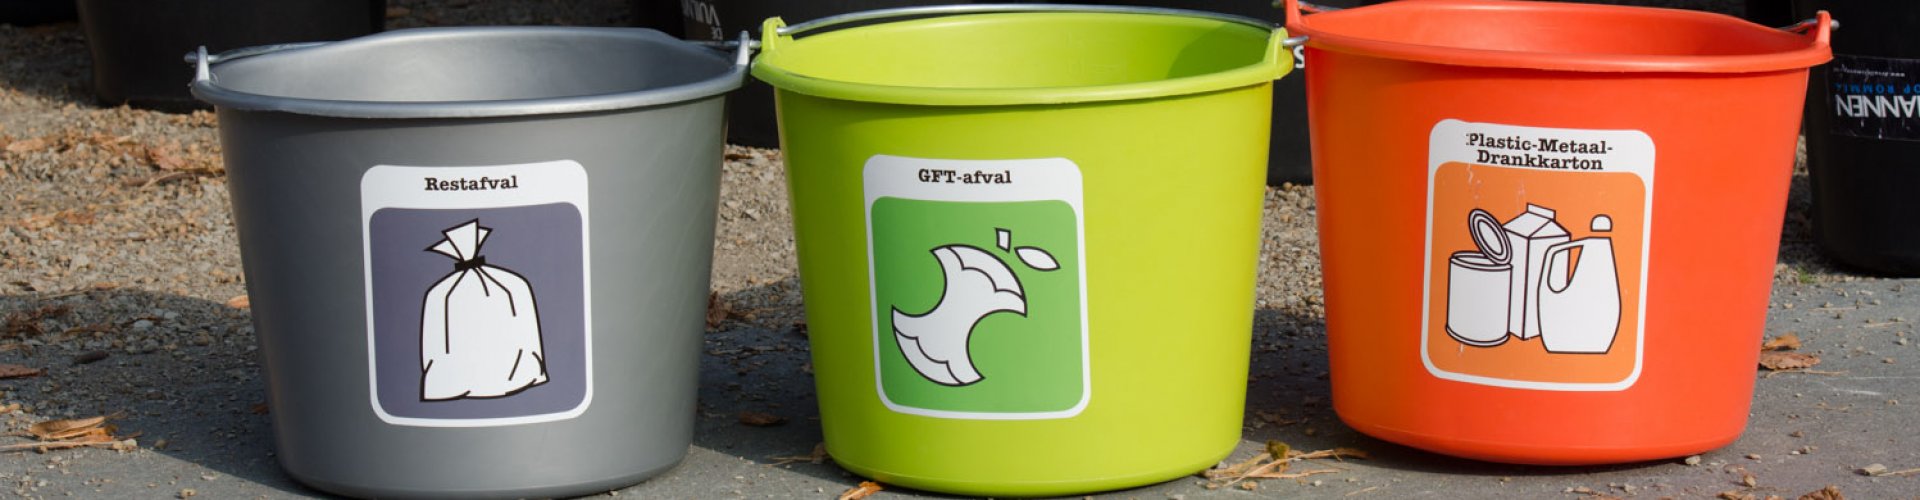 Afval scheiden stickers kopen? | container & afvalbakken